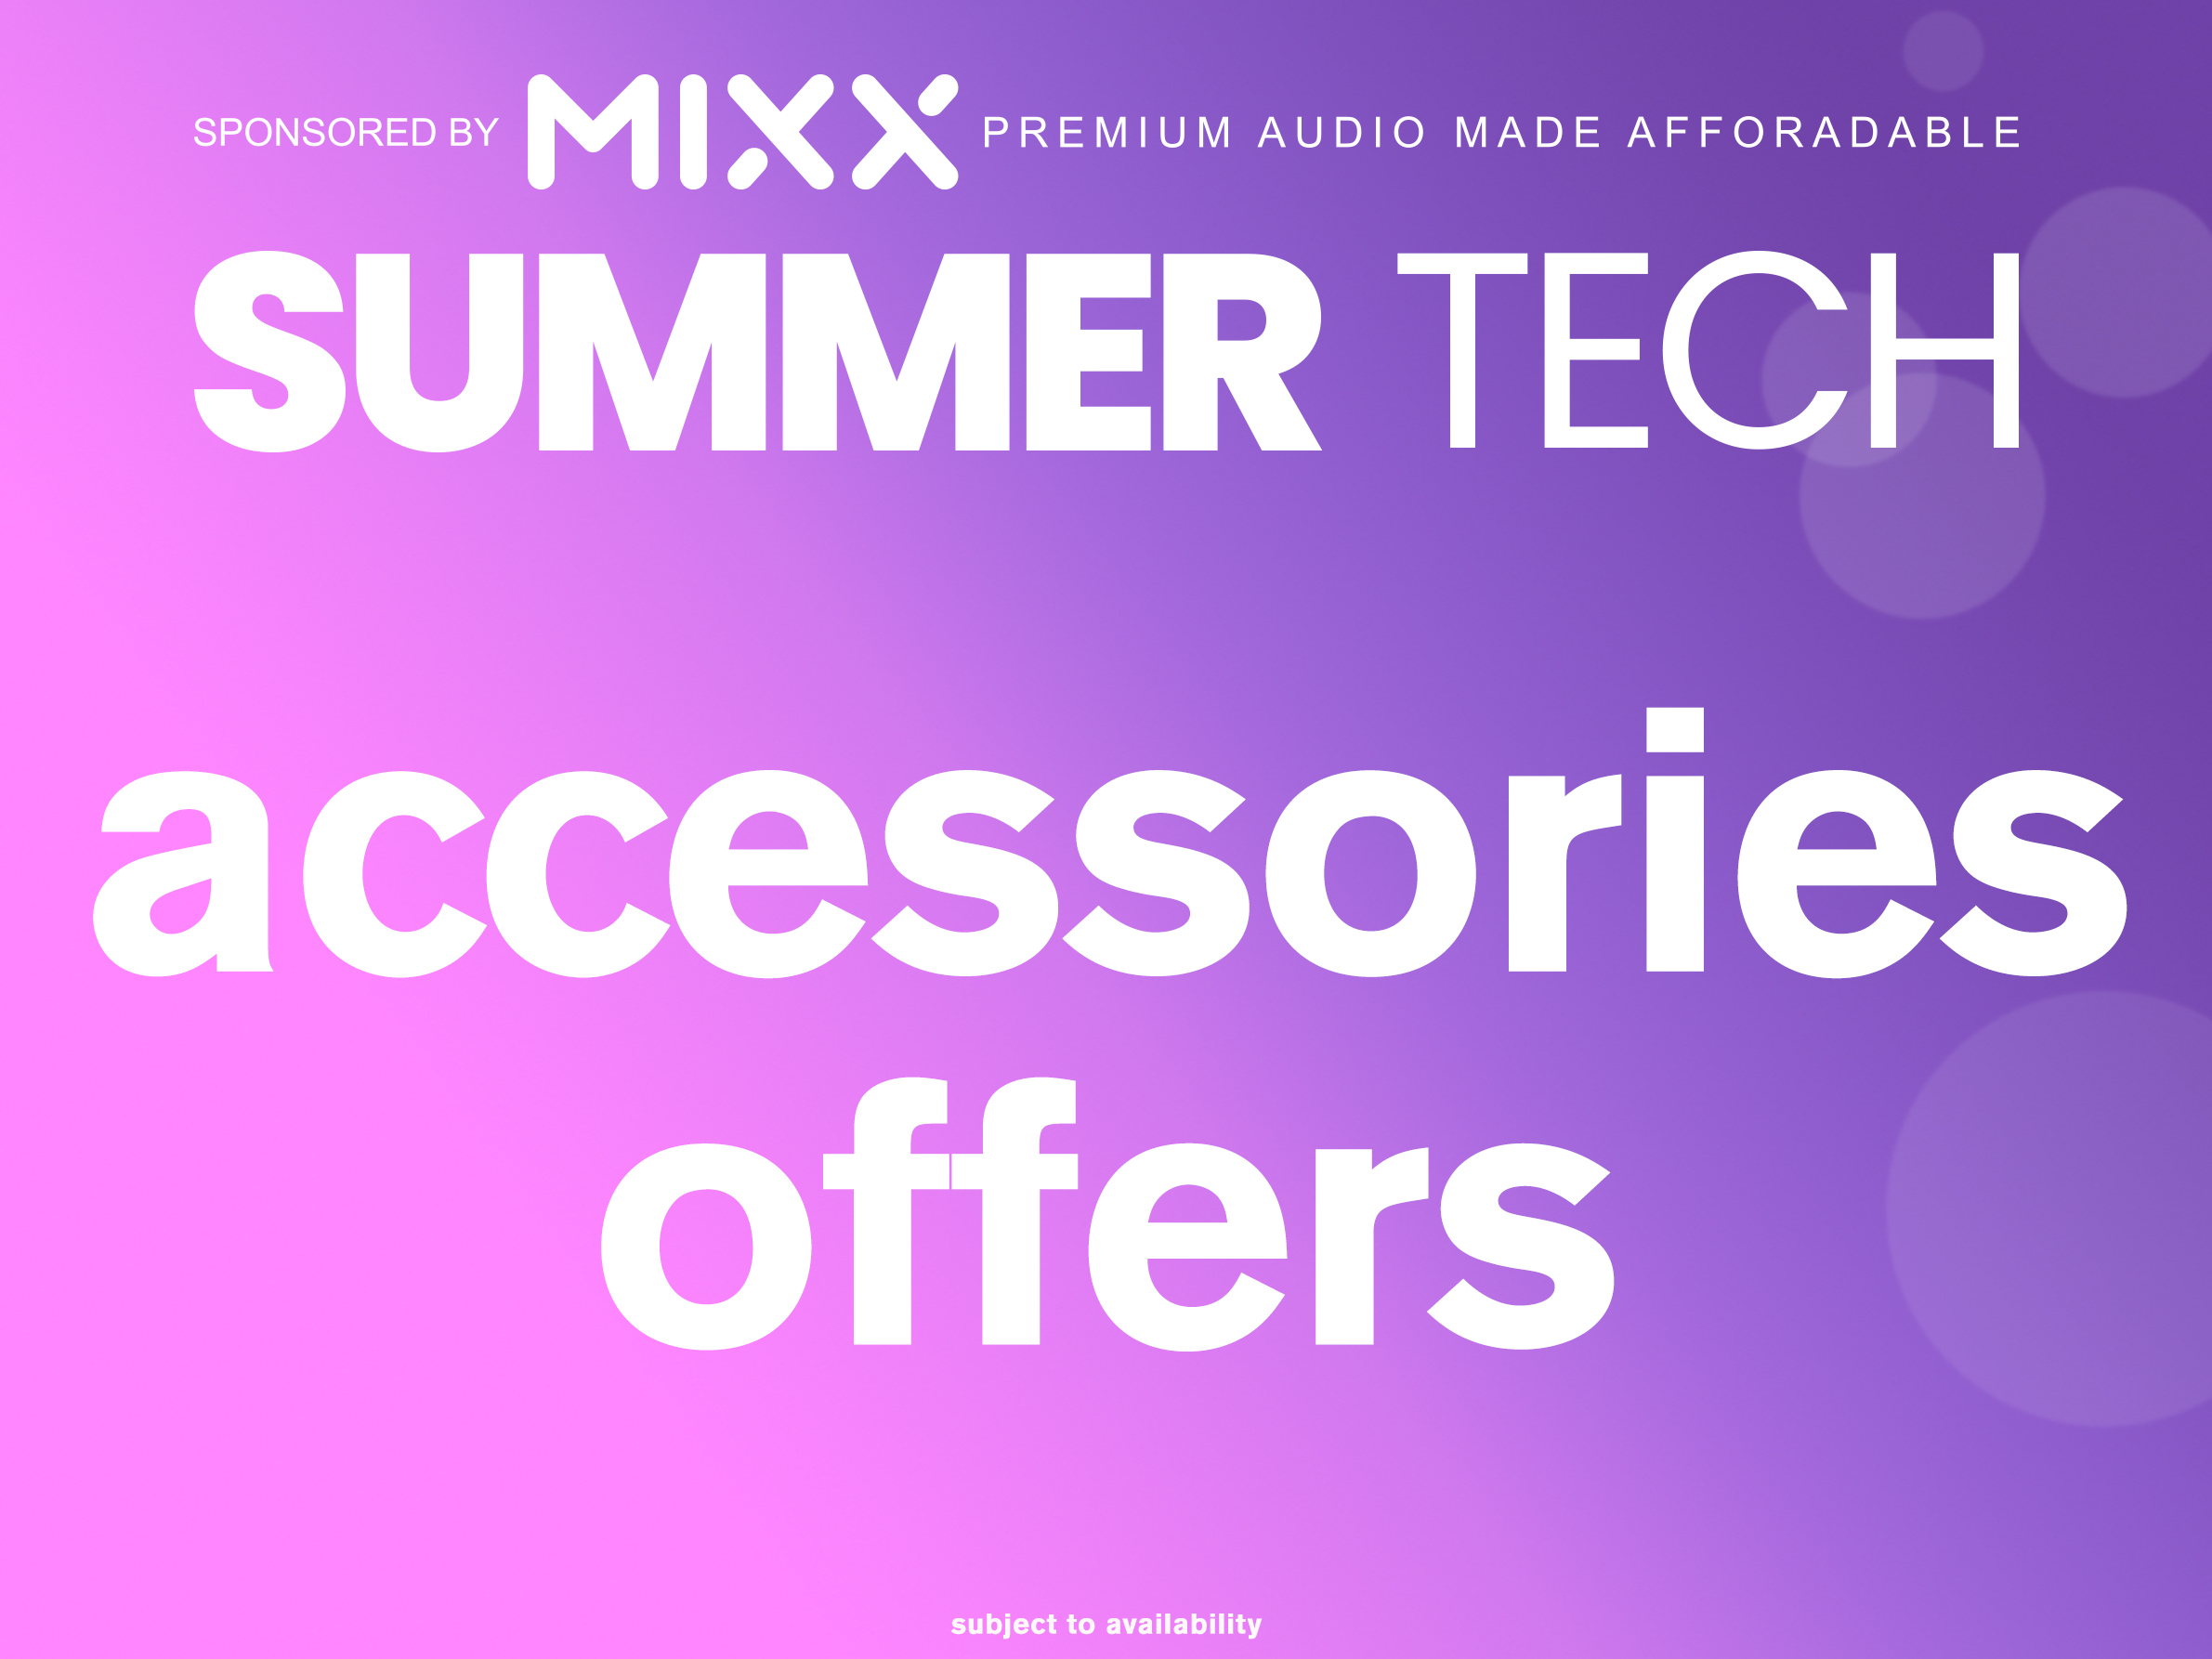 Summer Tech - Accessories Offers